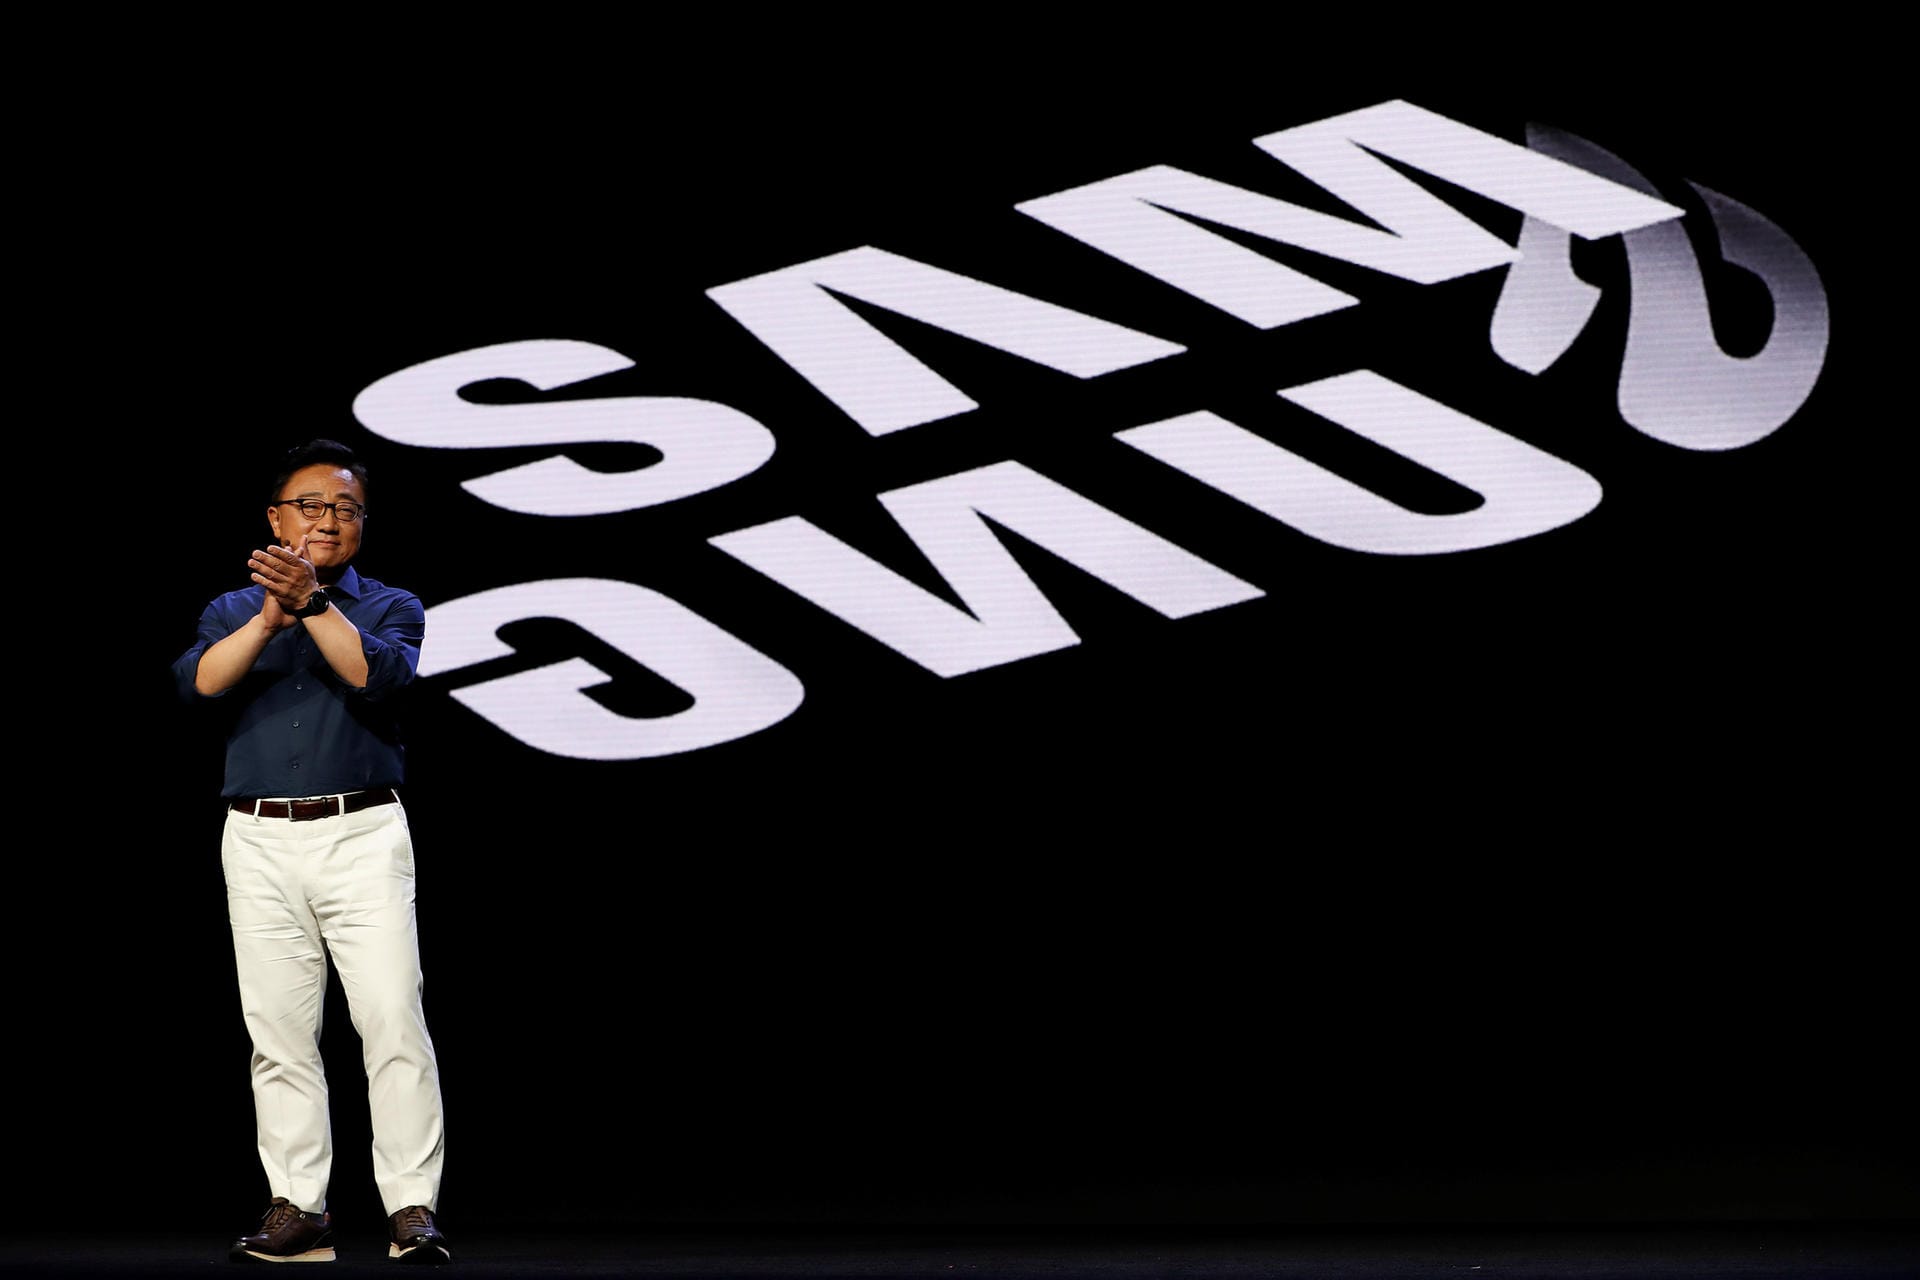 DJ Koh, Chef der Mobilfunksparte bei Samsung, spricht auf der Samsung Entwicklerkonferenz.